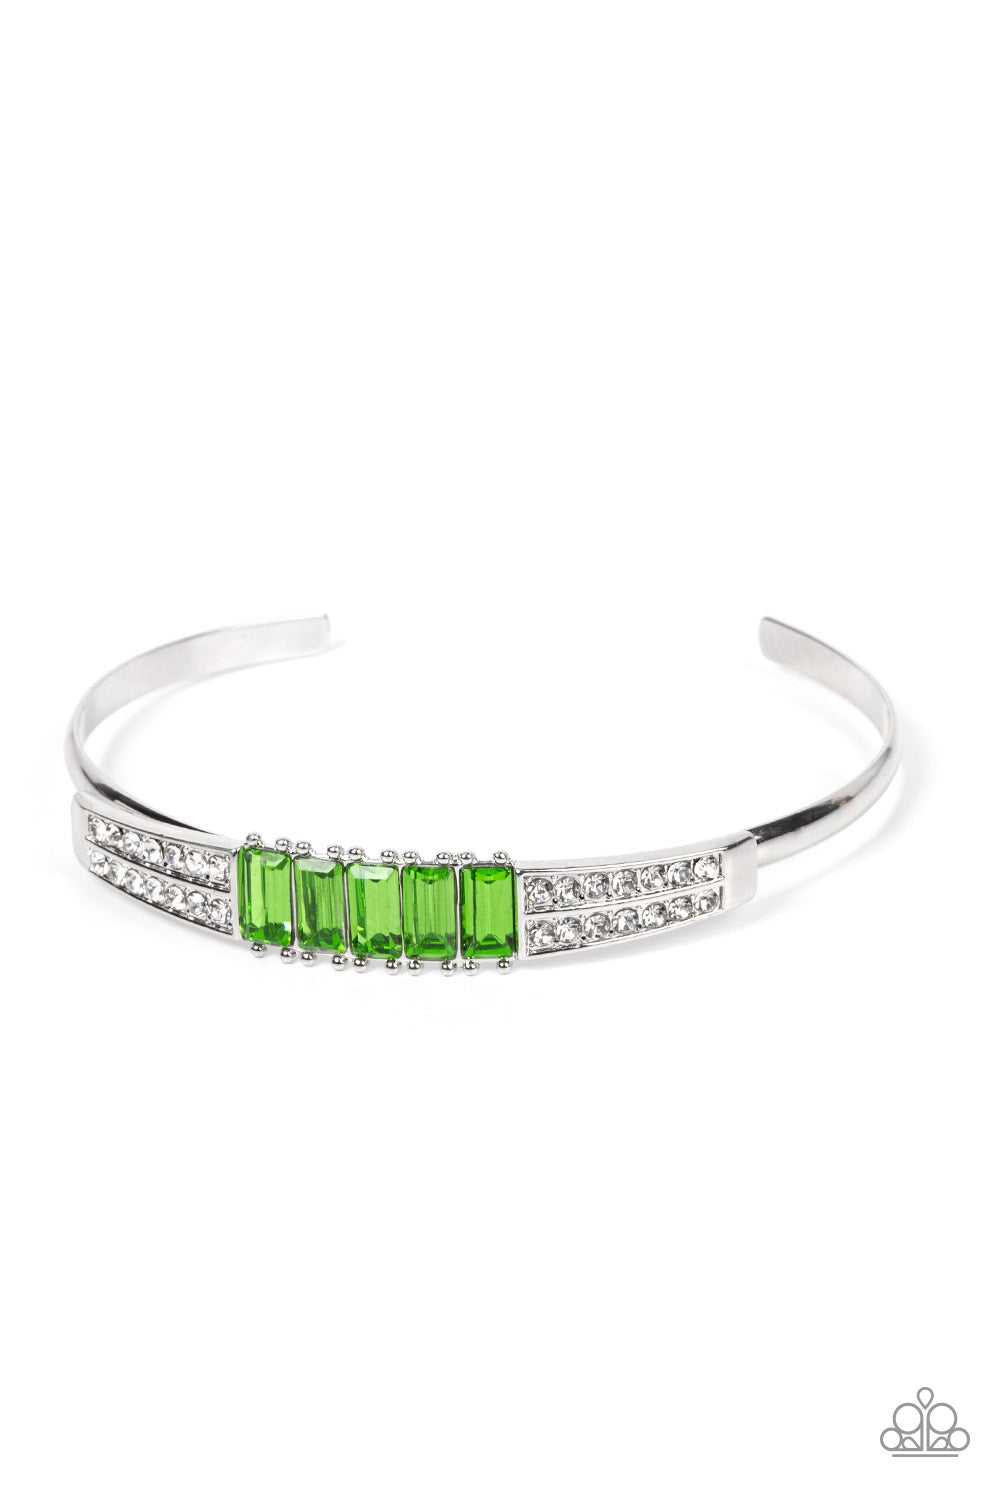 Paparazzi Spritzy Sparkle - Green Bracelet -Paparazzi Jewelry Images 